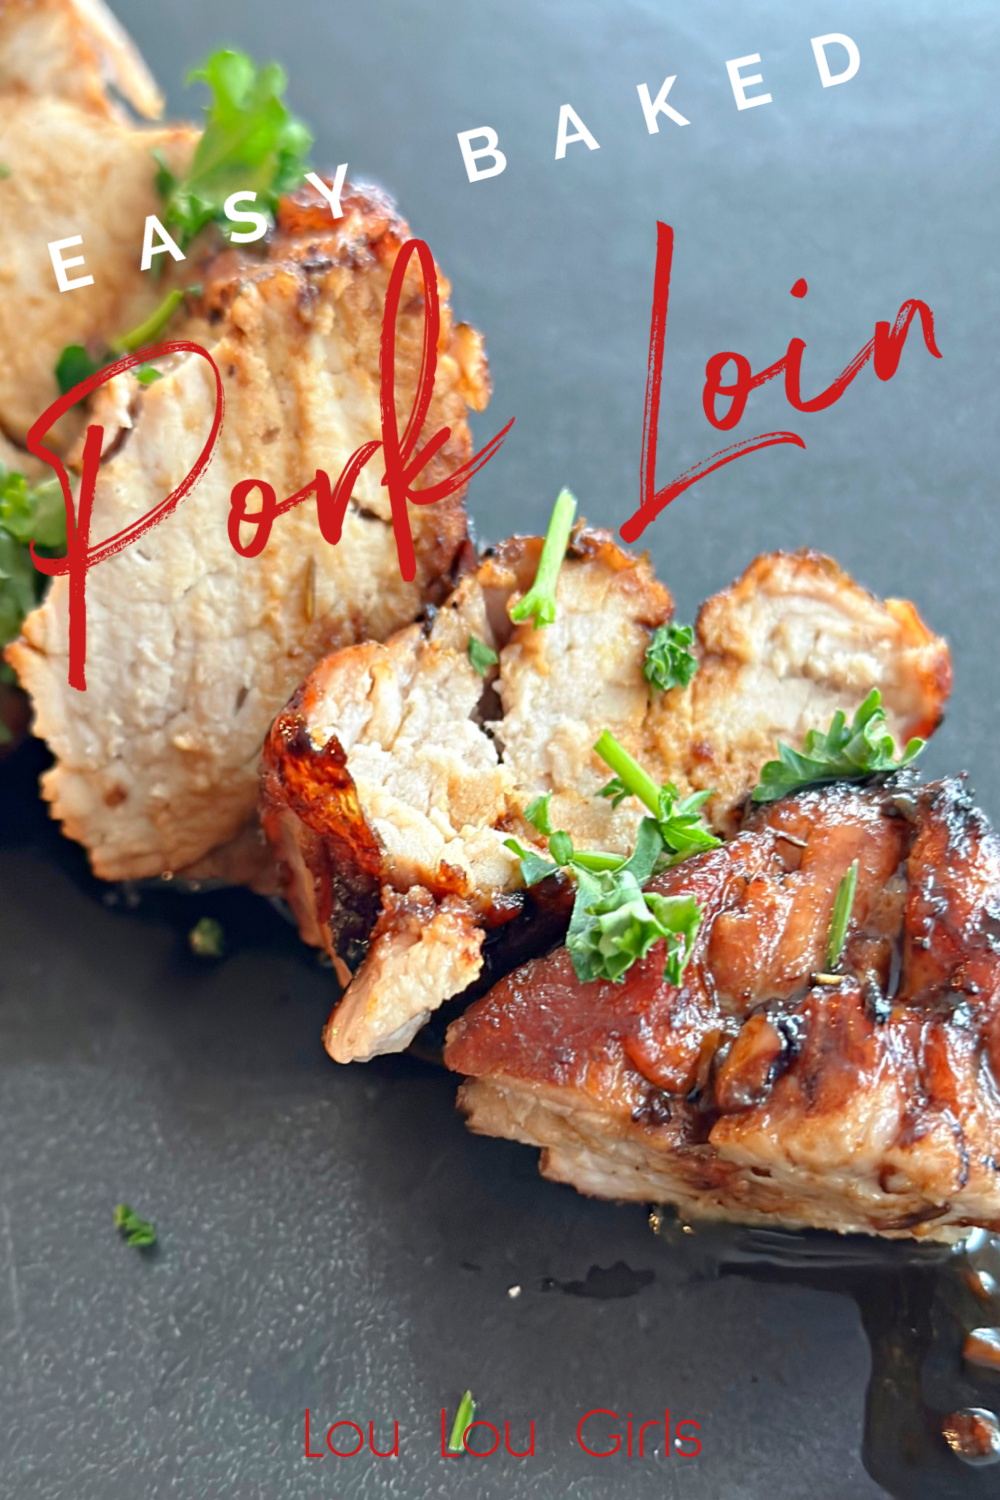 Garlic Balsamic Pork Tenderloin #pork #baked #easyrecipe #dinner #familydinner #weeknightdinner